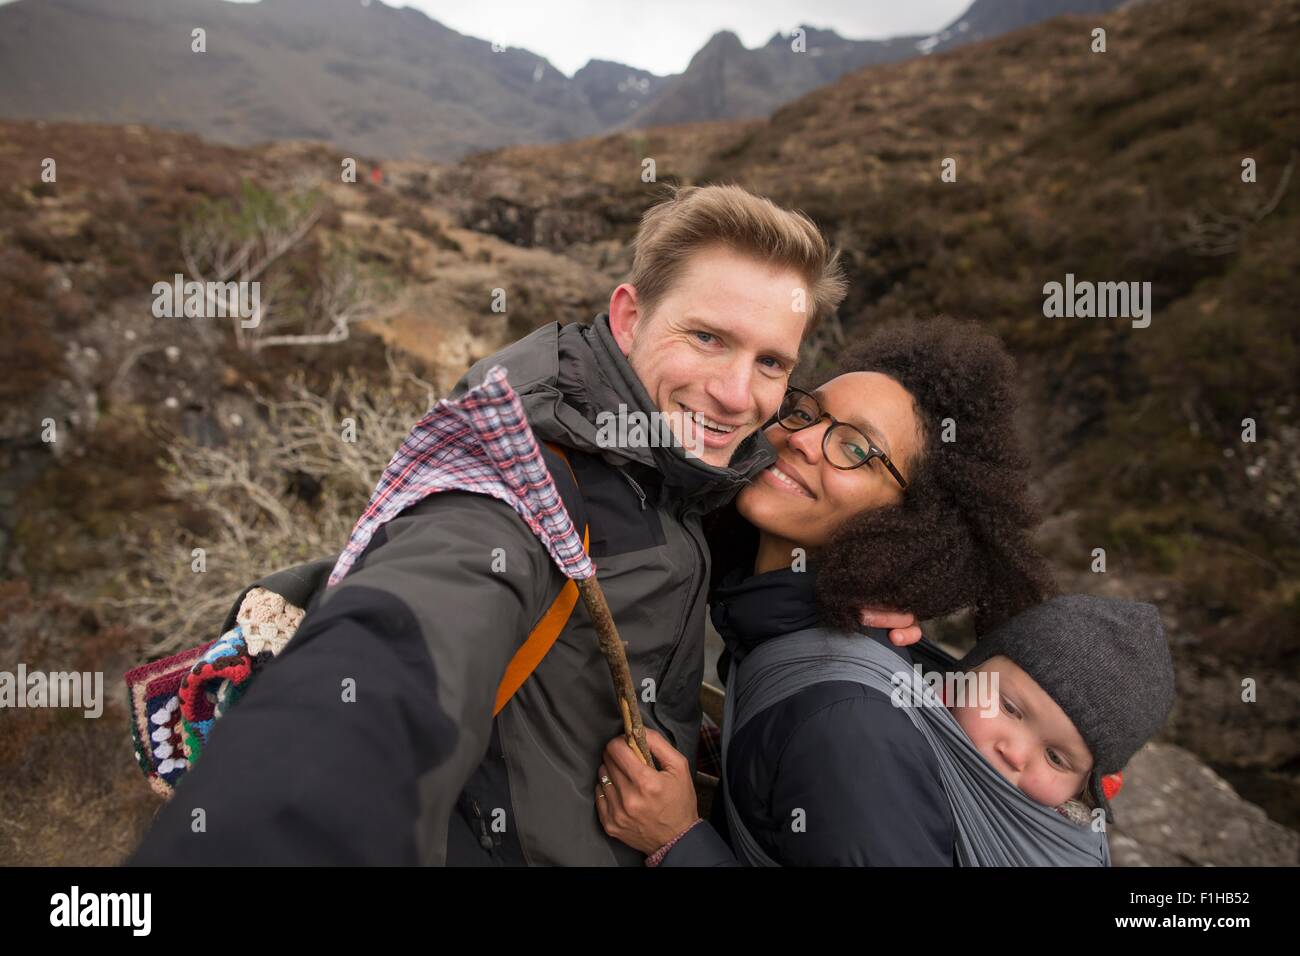 Familie auf Wanderung, lächelnd in Richtung Kamera Stockfoto